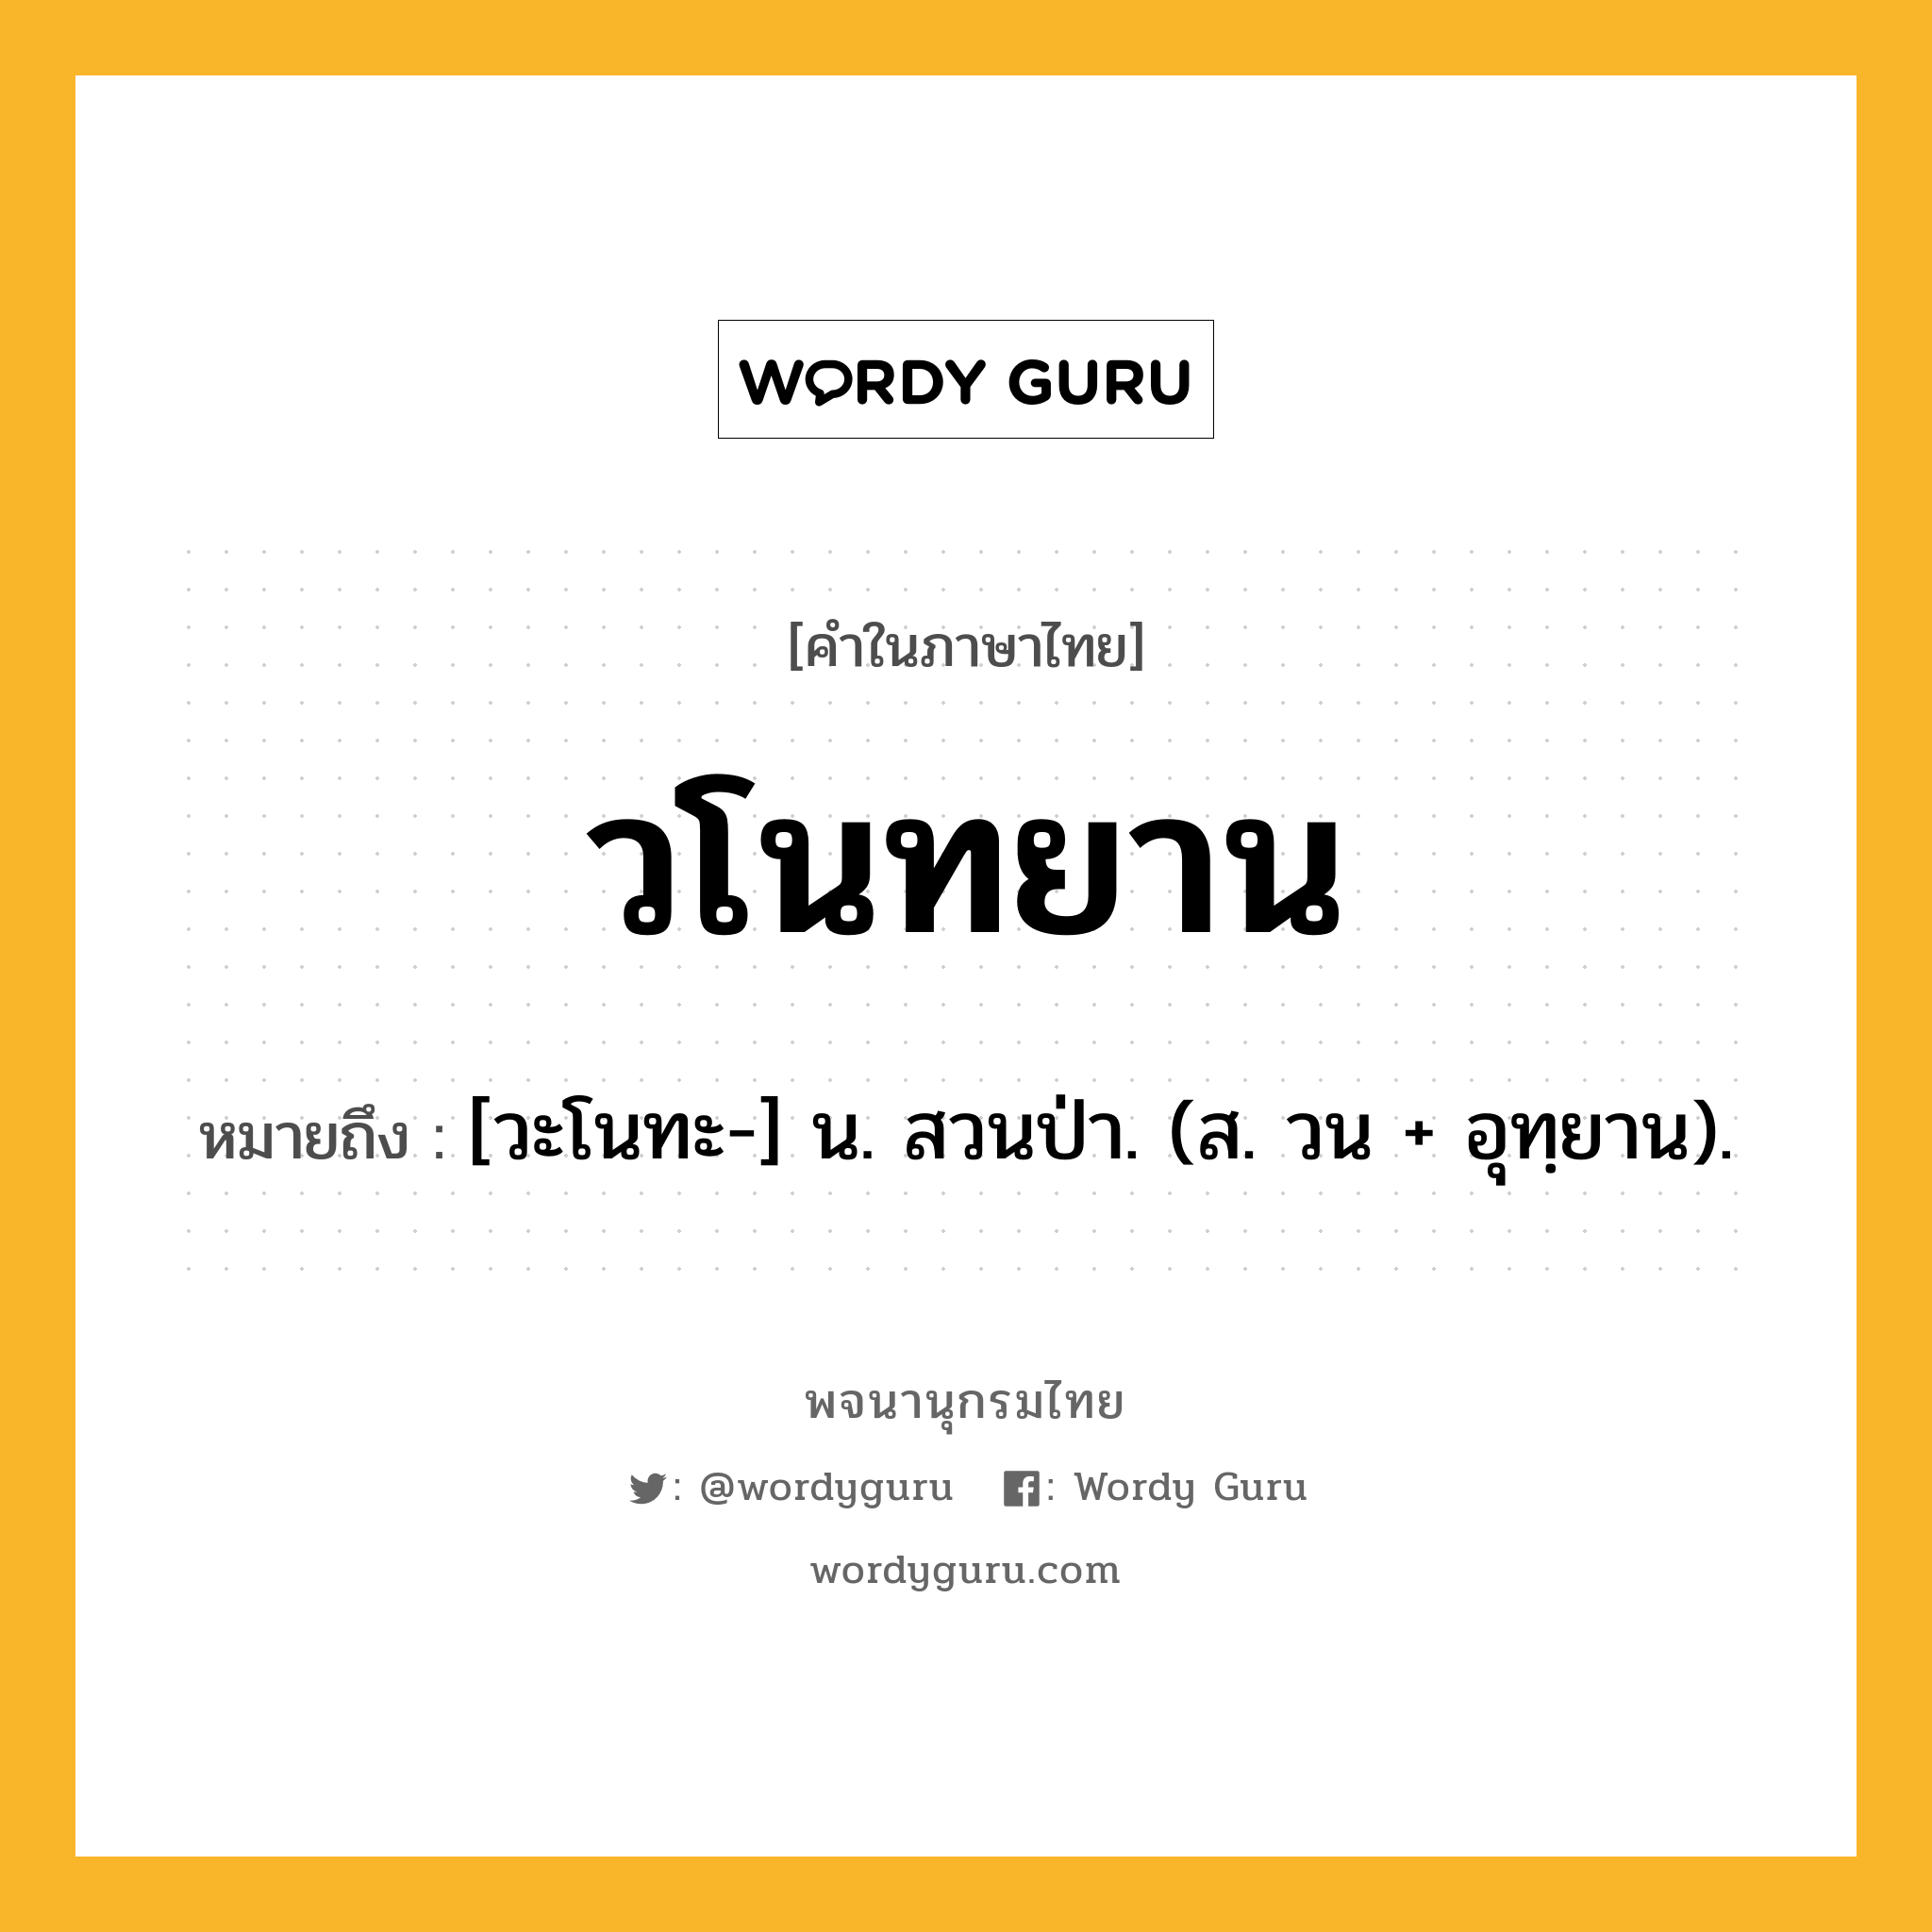 วโนทยาน ความหมาย หมายถึงอะไร?, คำในภาษาไทย วโนทยาน หมายถึง [วะโนทะ-] น. สวนป่า. (ส. วน + อุทฺยาน).